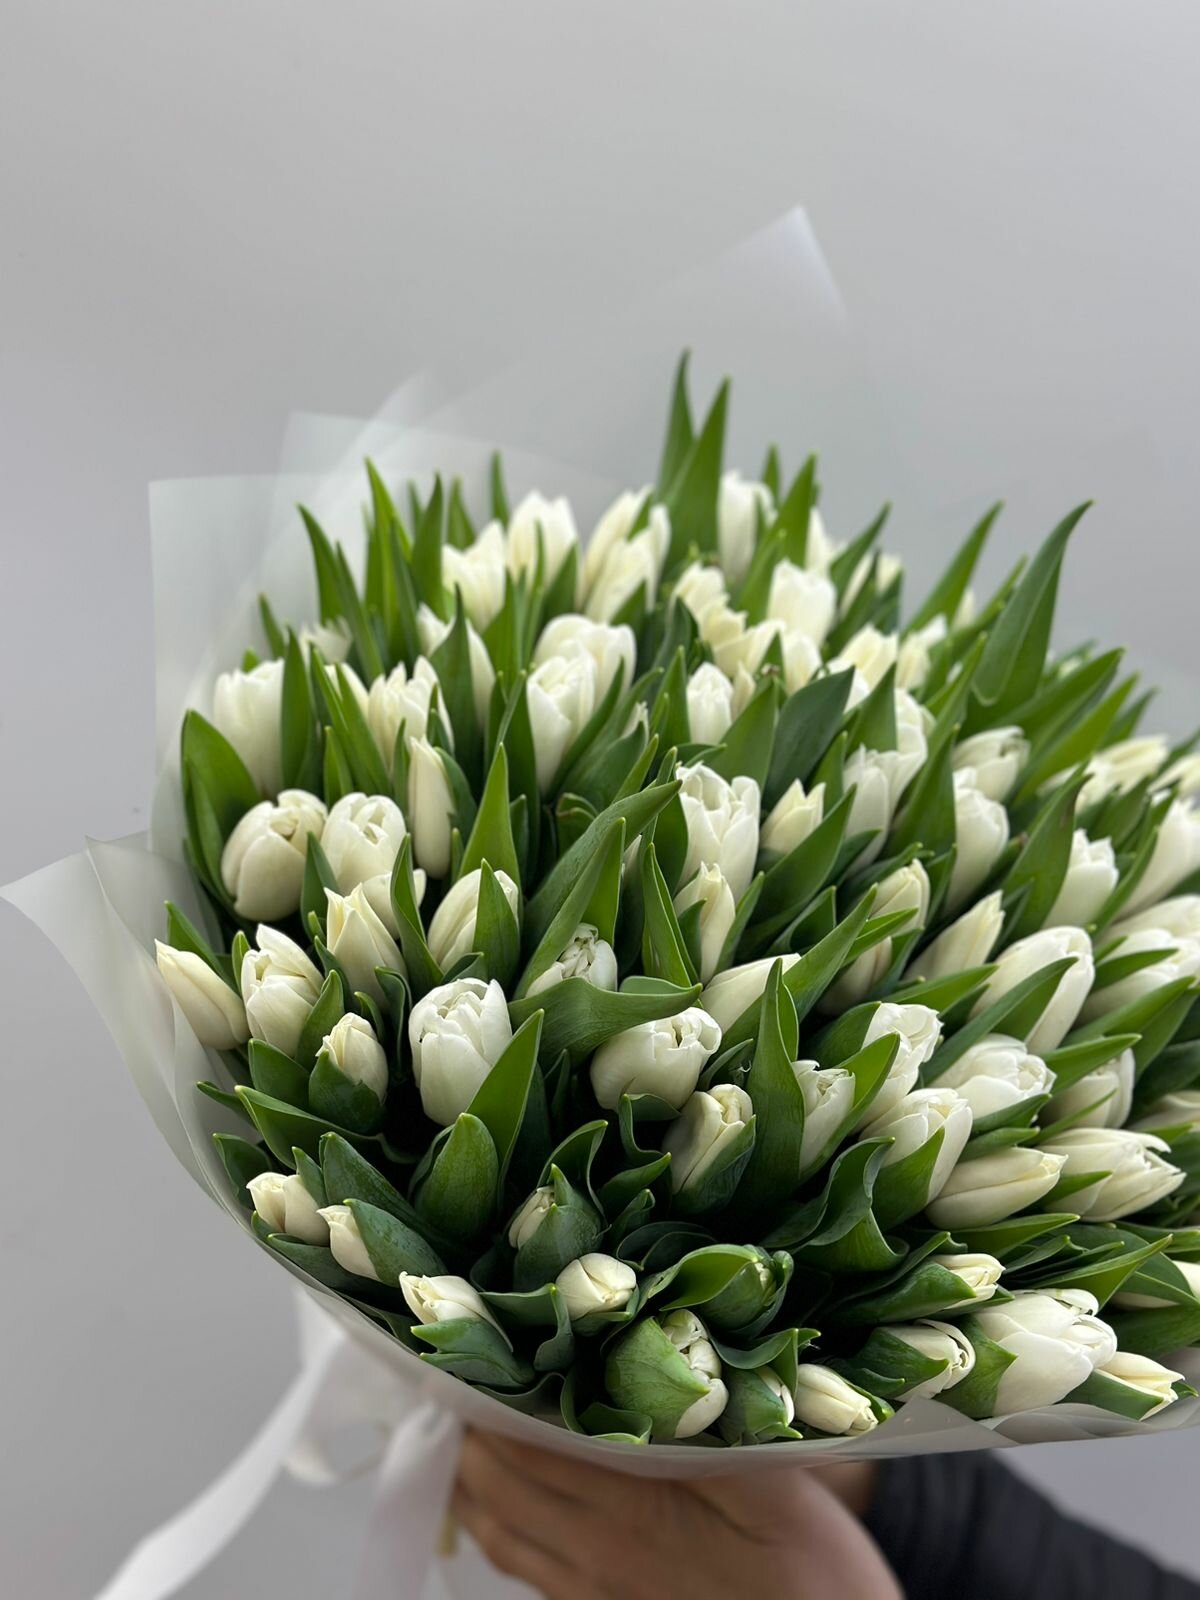 Премиум букет тюльпанов Flowerella Premium (белые) 101 штука